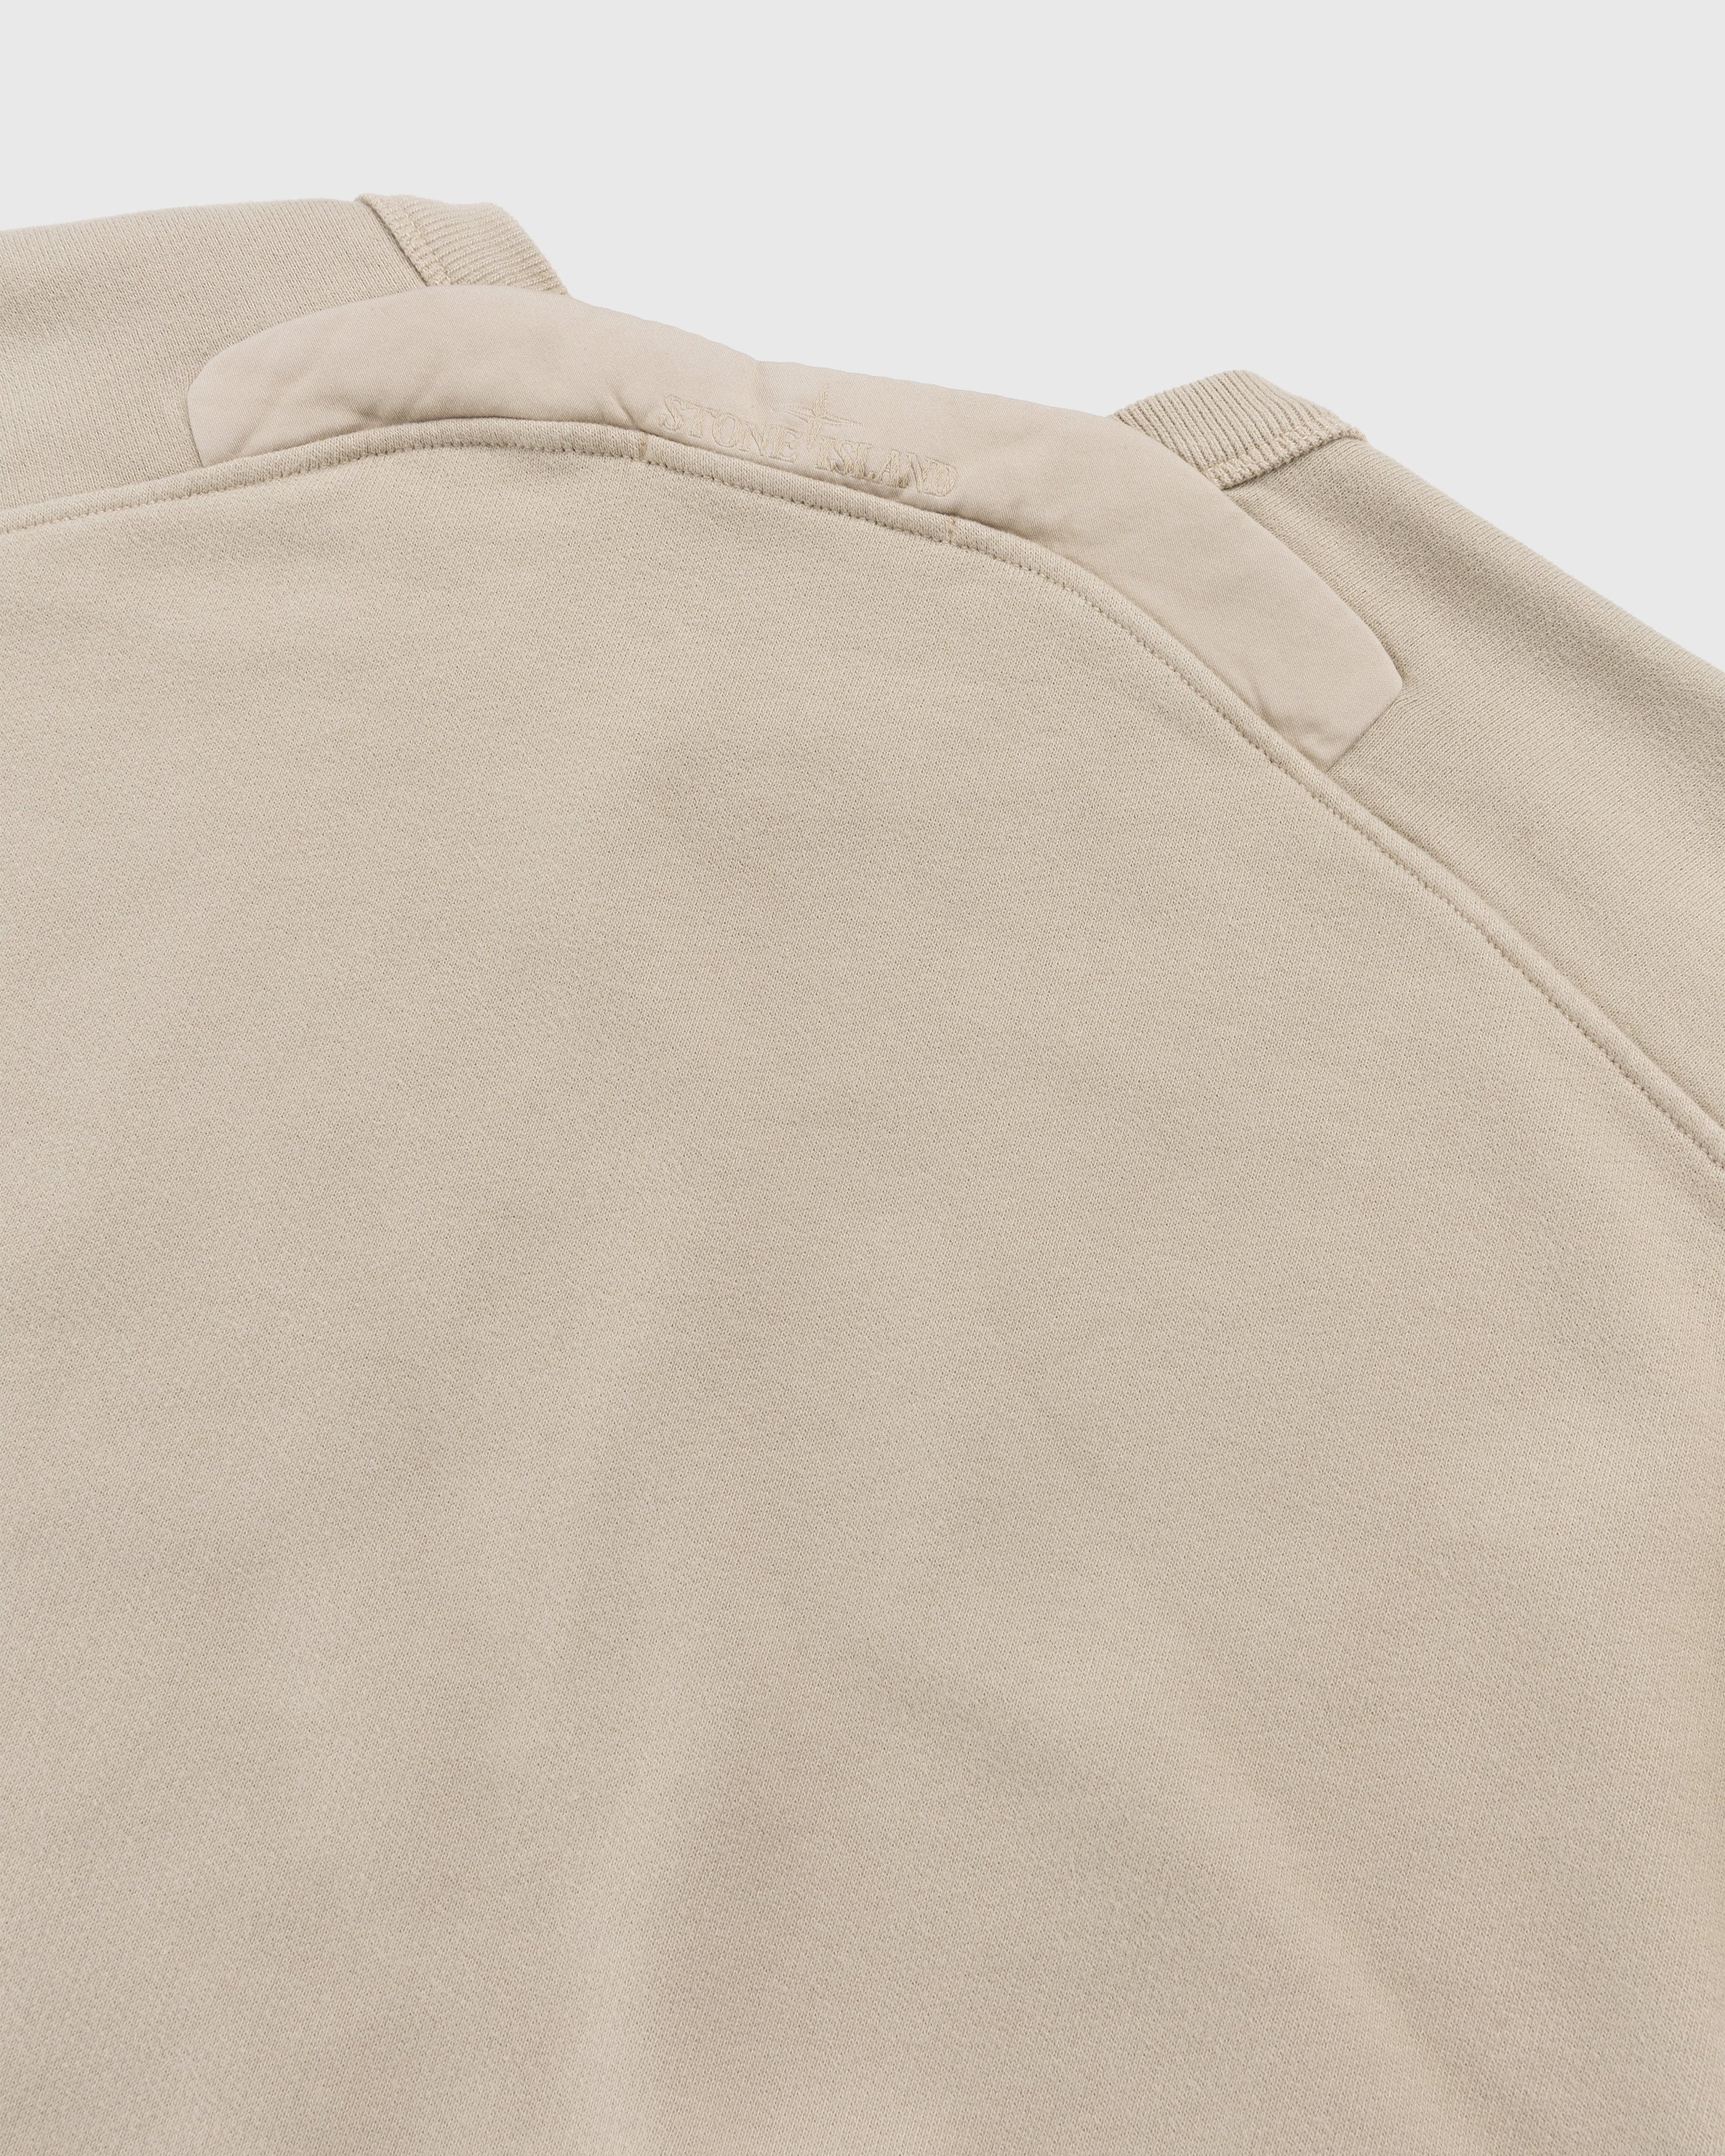 Stone Island - Garment-Dyed Fleece Crewneck Sweatshirt Beige - Clothing - Beige - Image 4